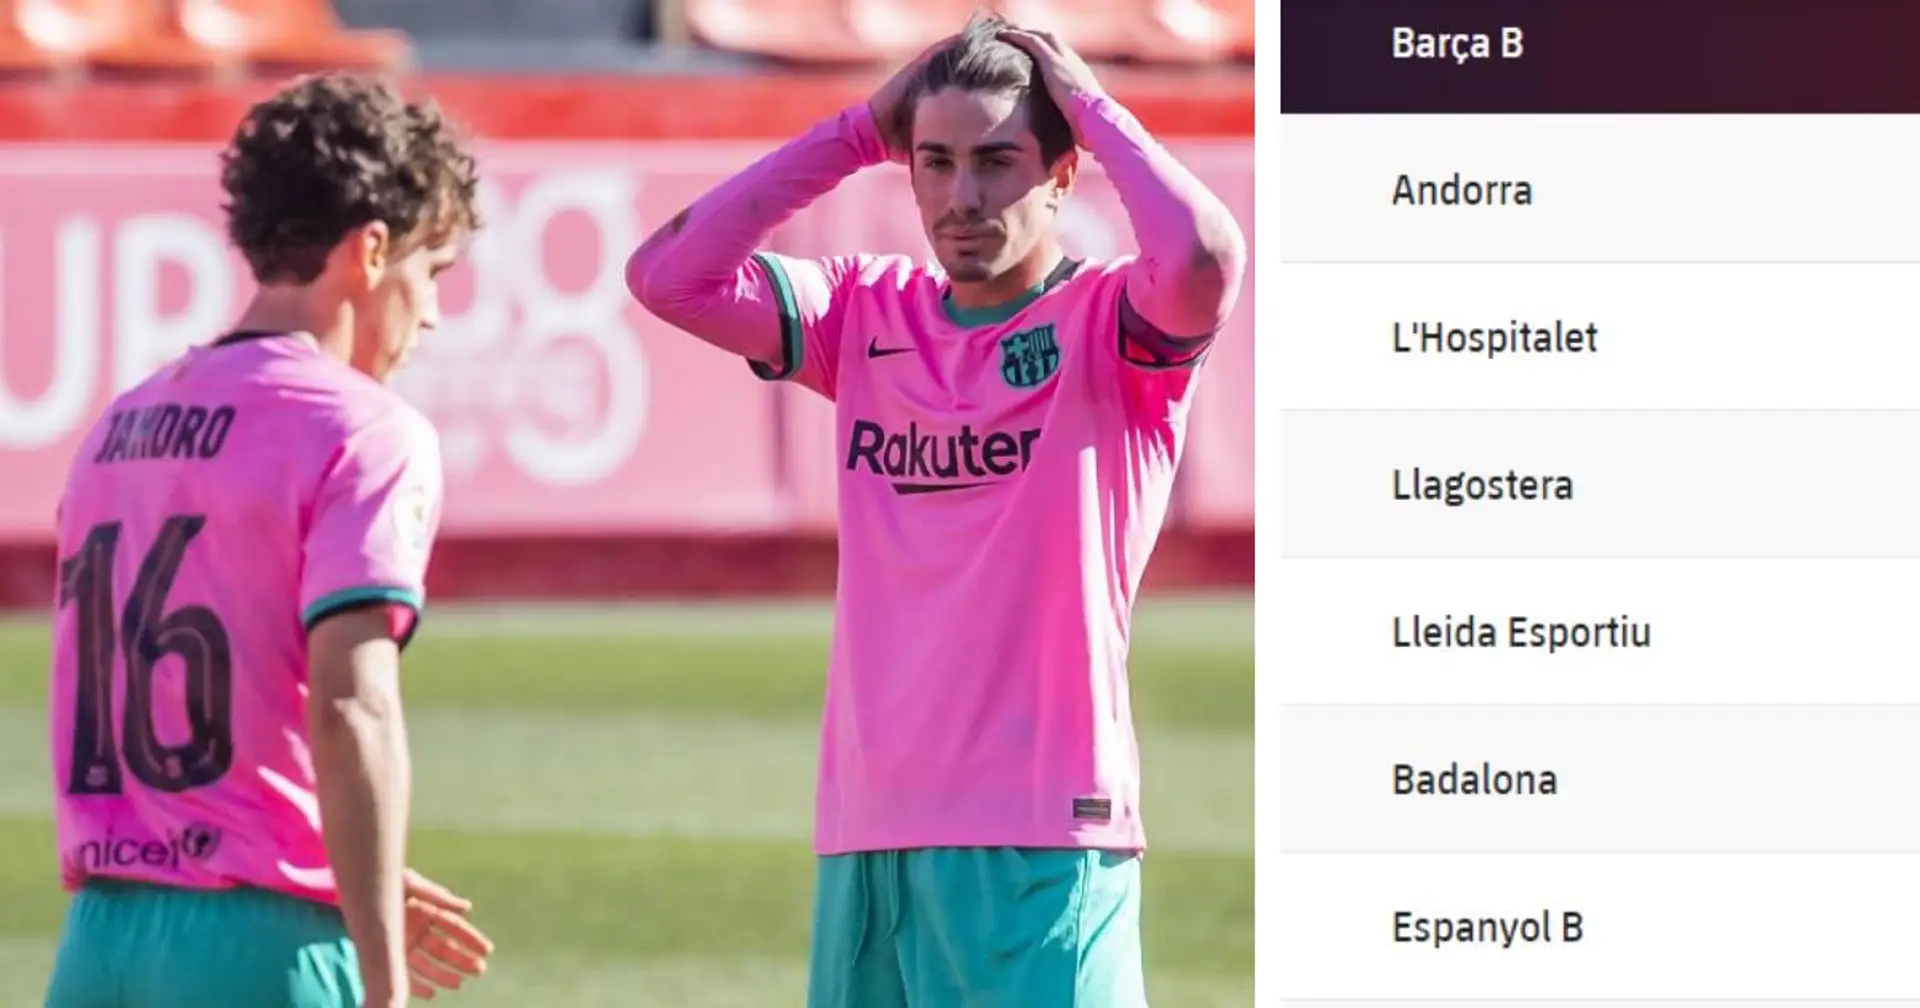 Les espoirs de promotion du Barca B prennent un coup après la défaite face aux leaders du groupe